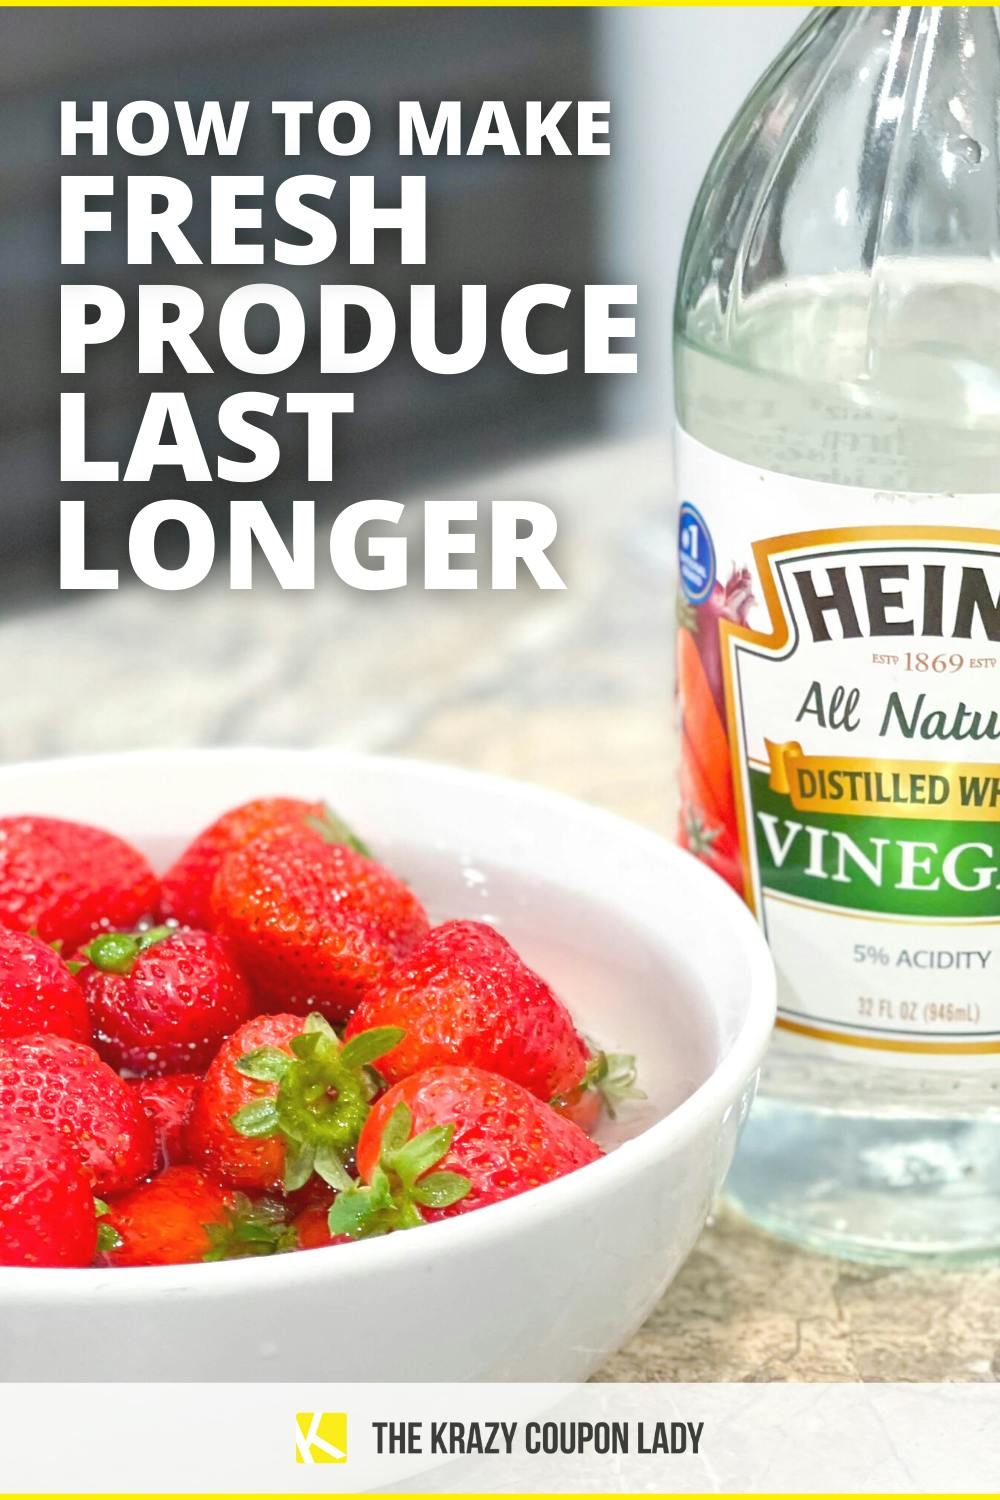 How to Make Fresh Produce Last Longer